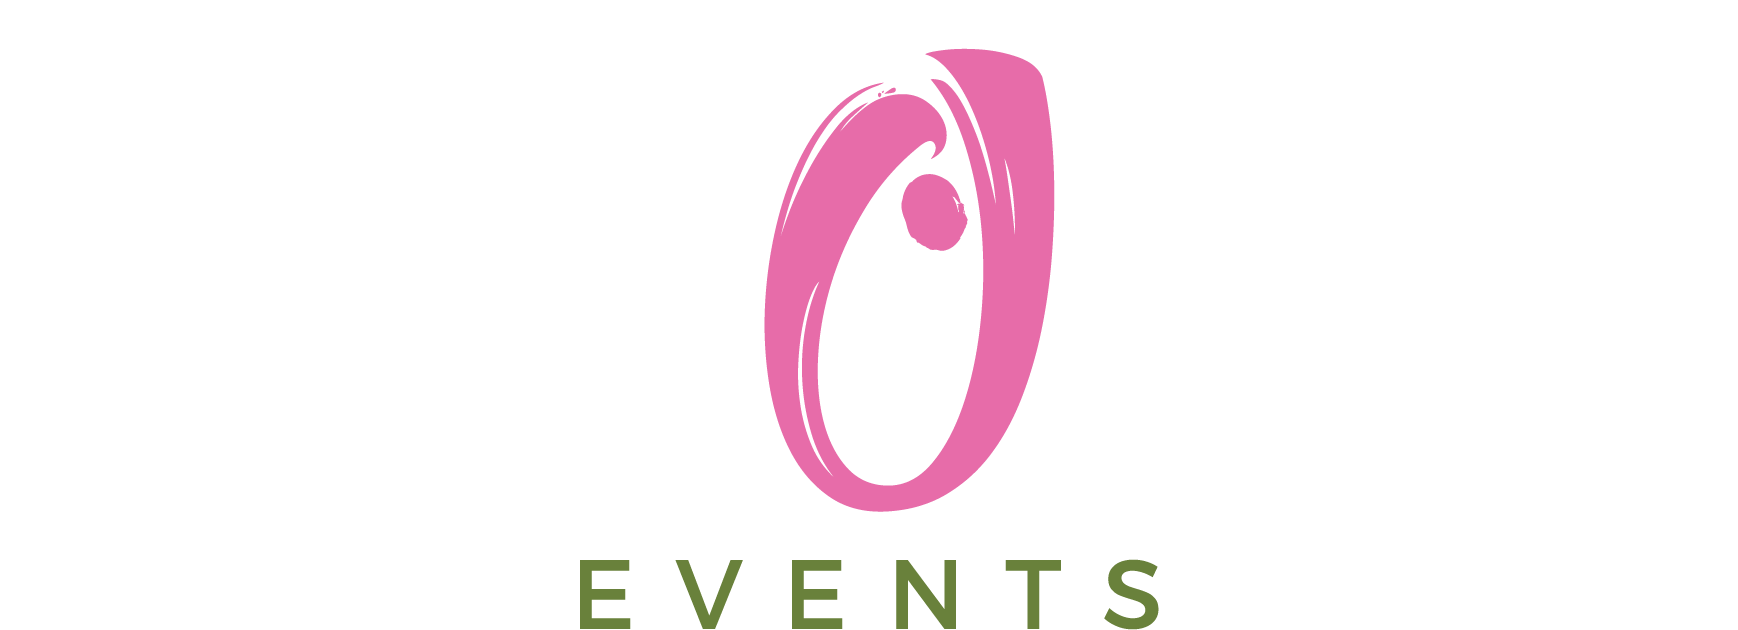 Pink Olive Events logo